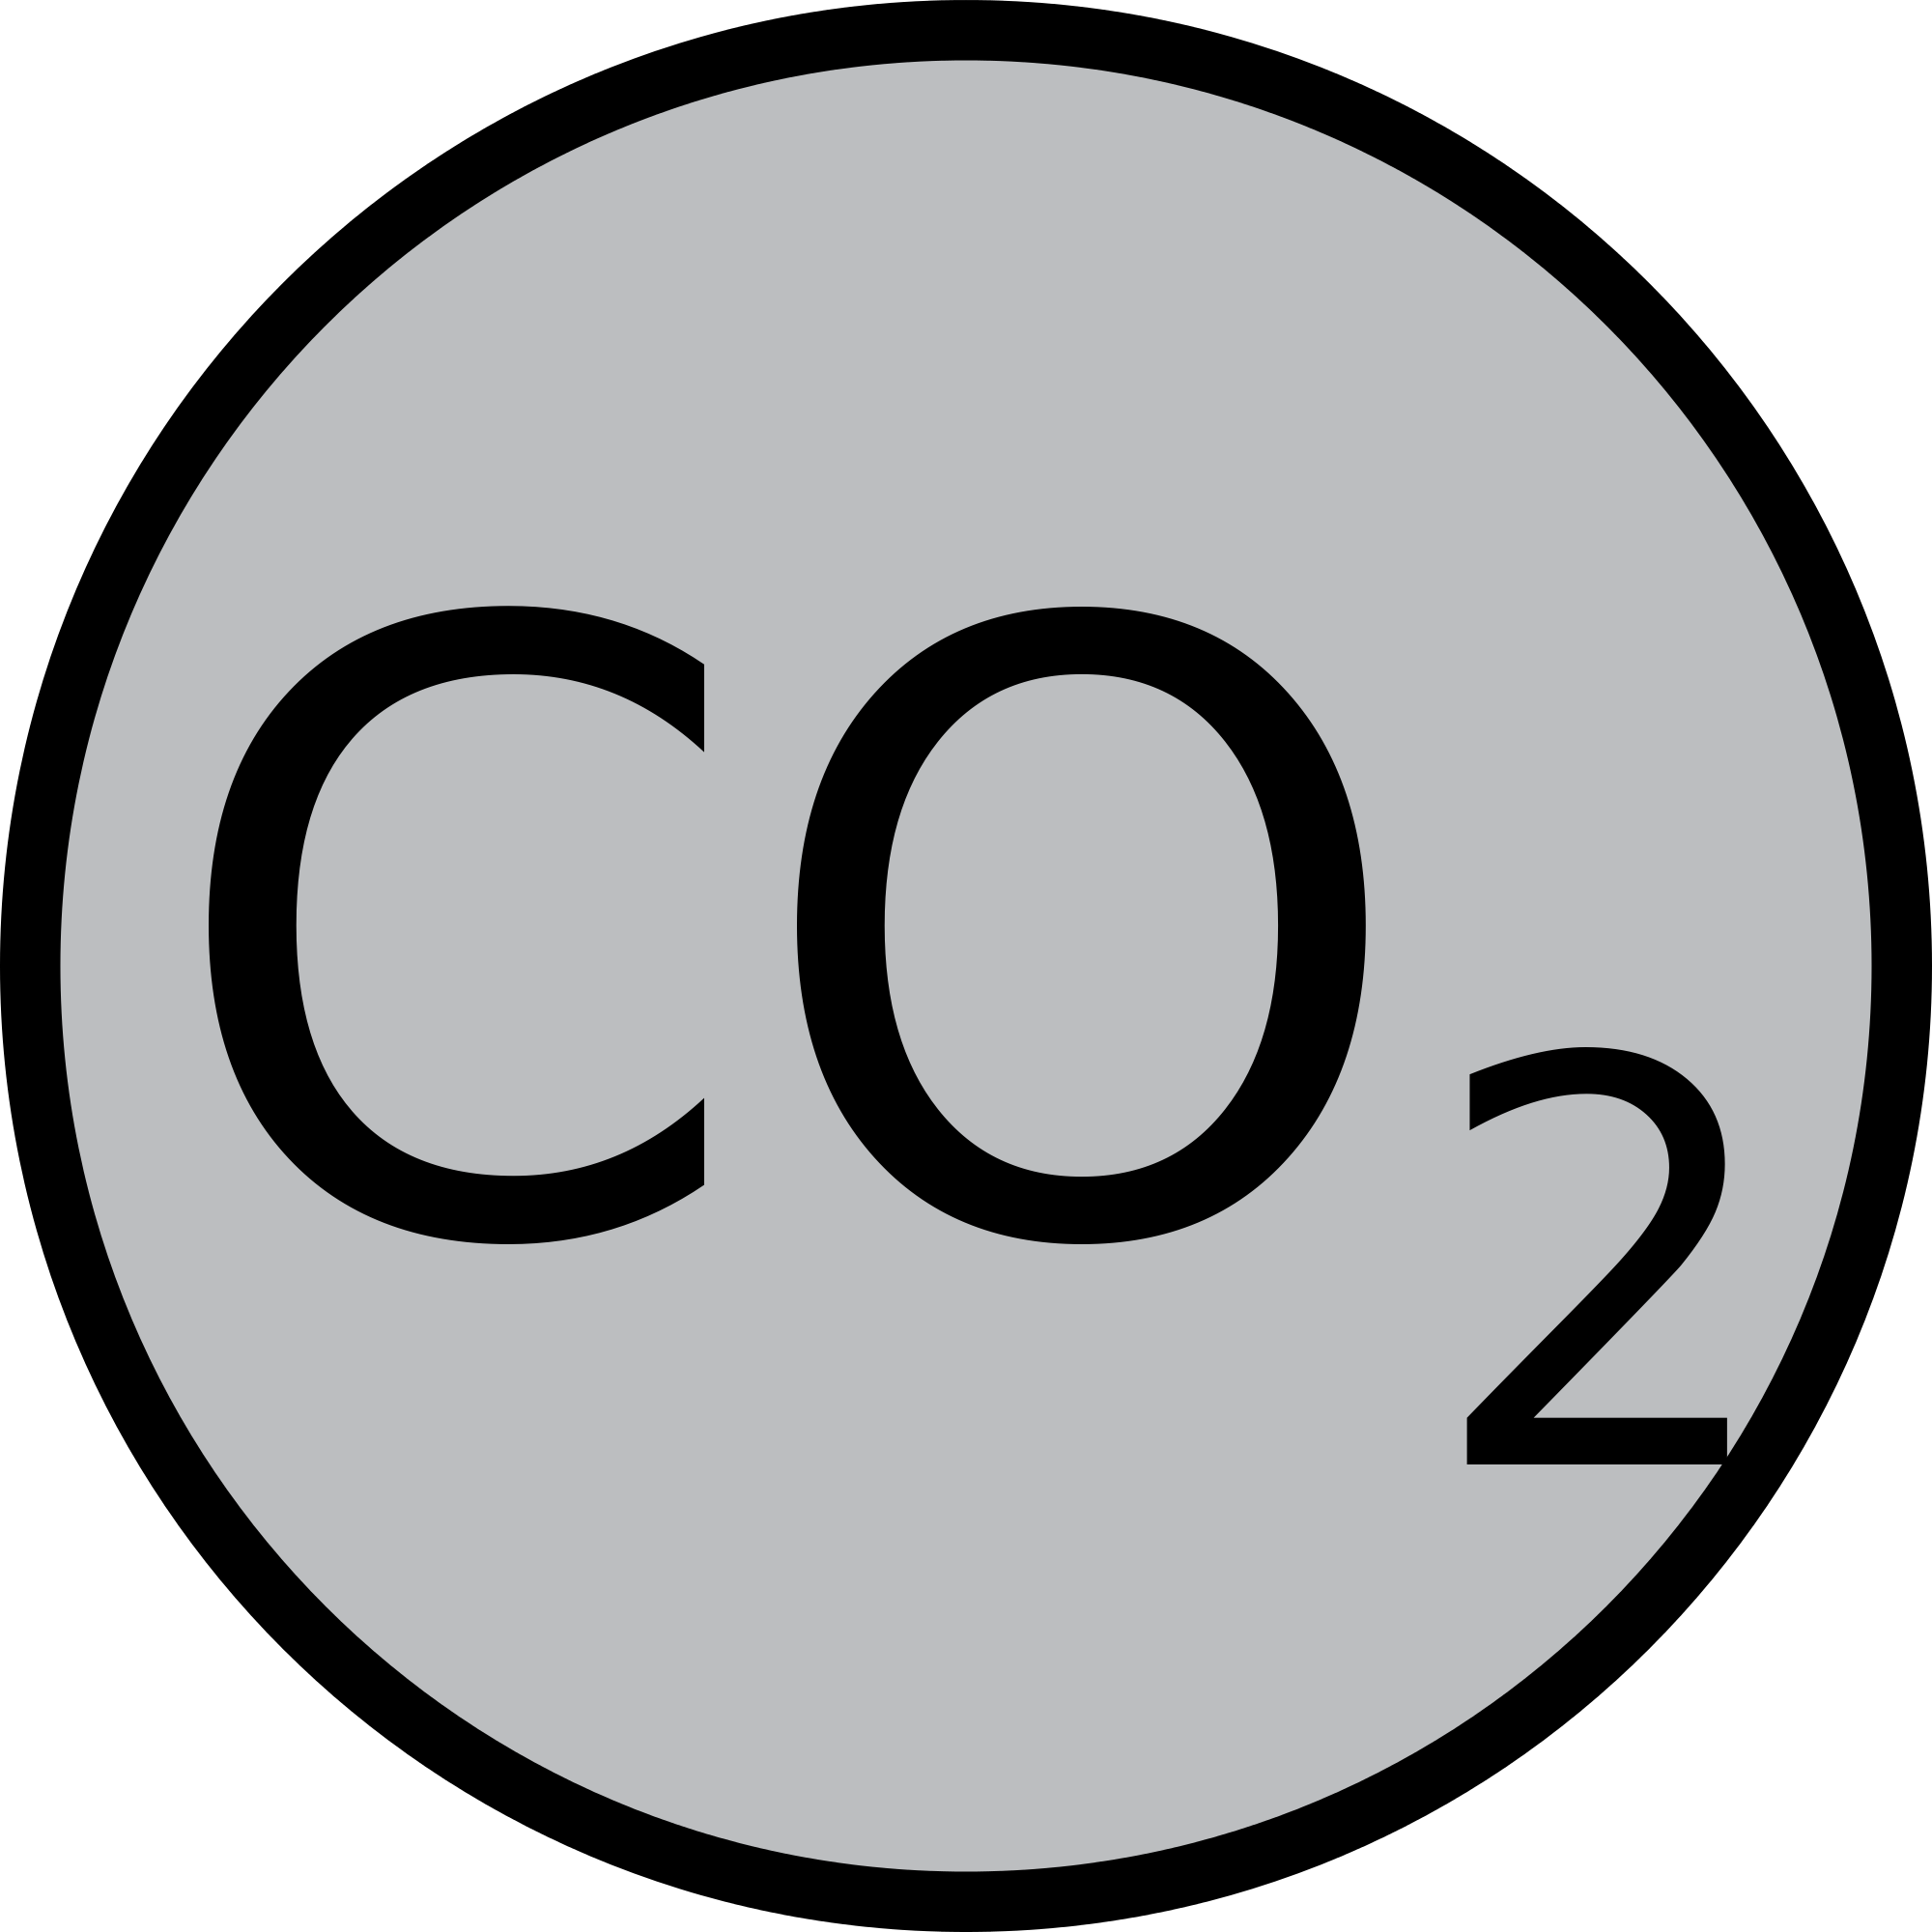 Co2 - Carbon Dioxide Clipart (2000x2000)